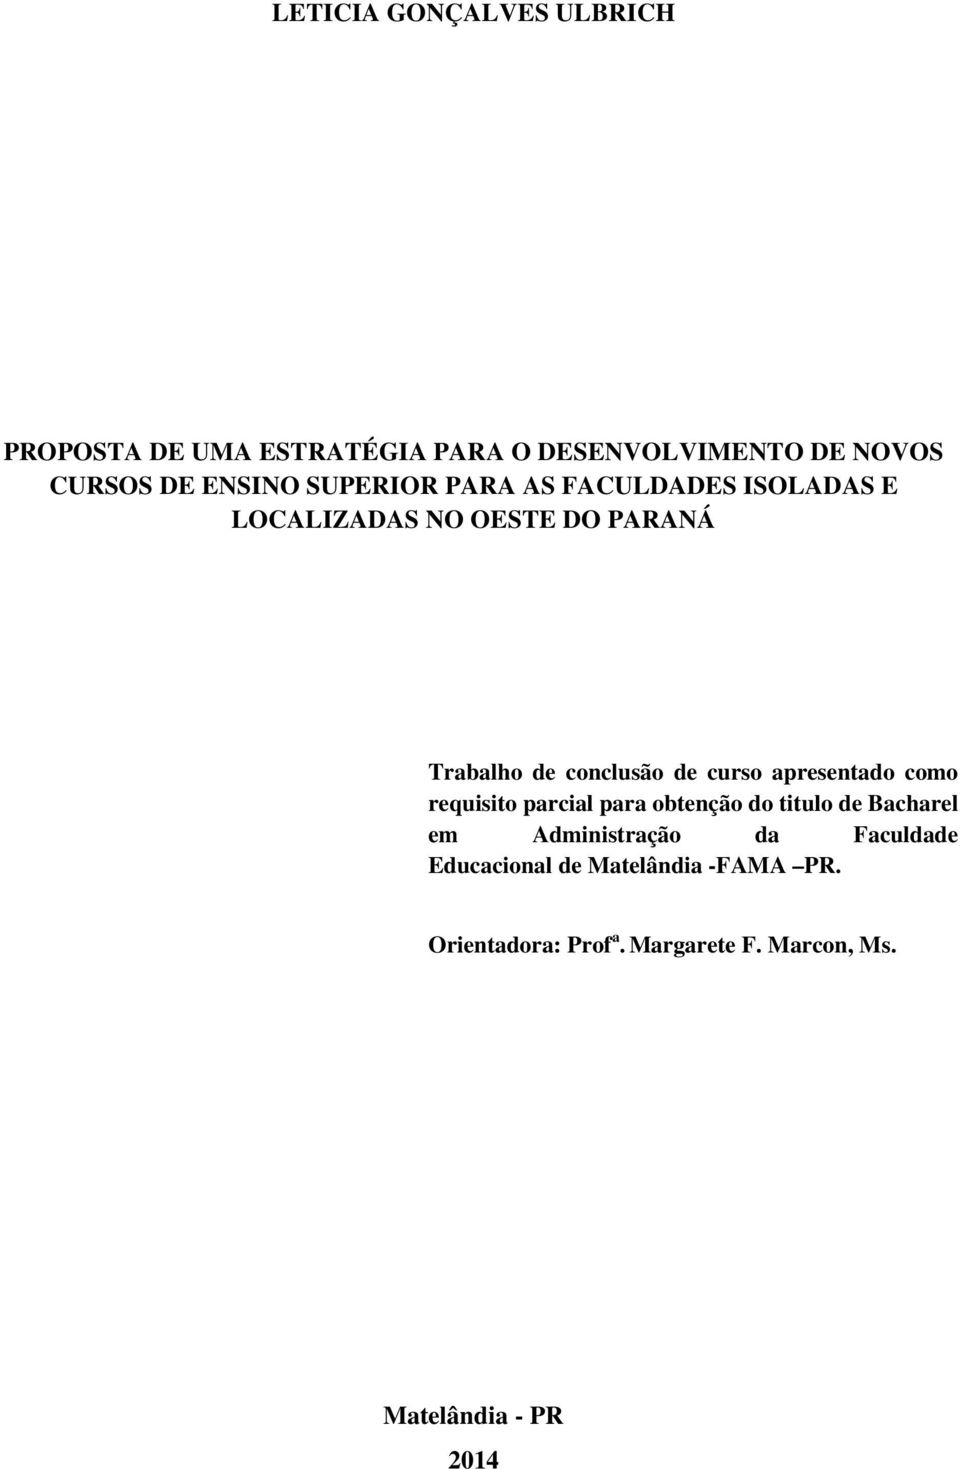 apresentado como requisito parcial para obtenção do titulo de Bacharel em Administração da Faculdade